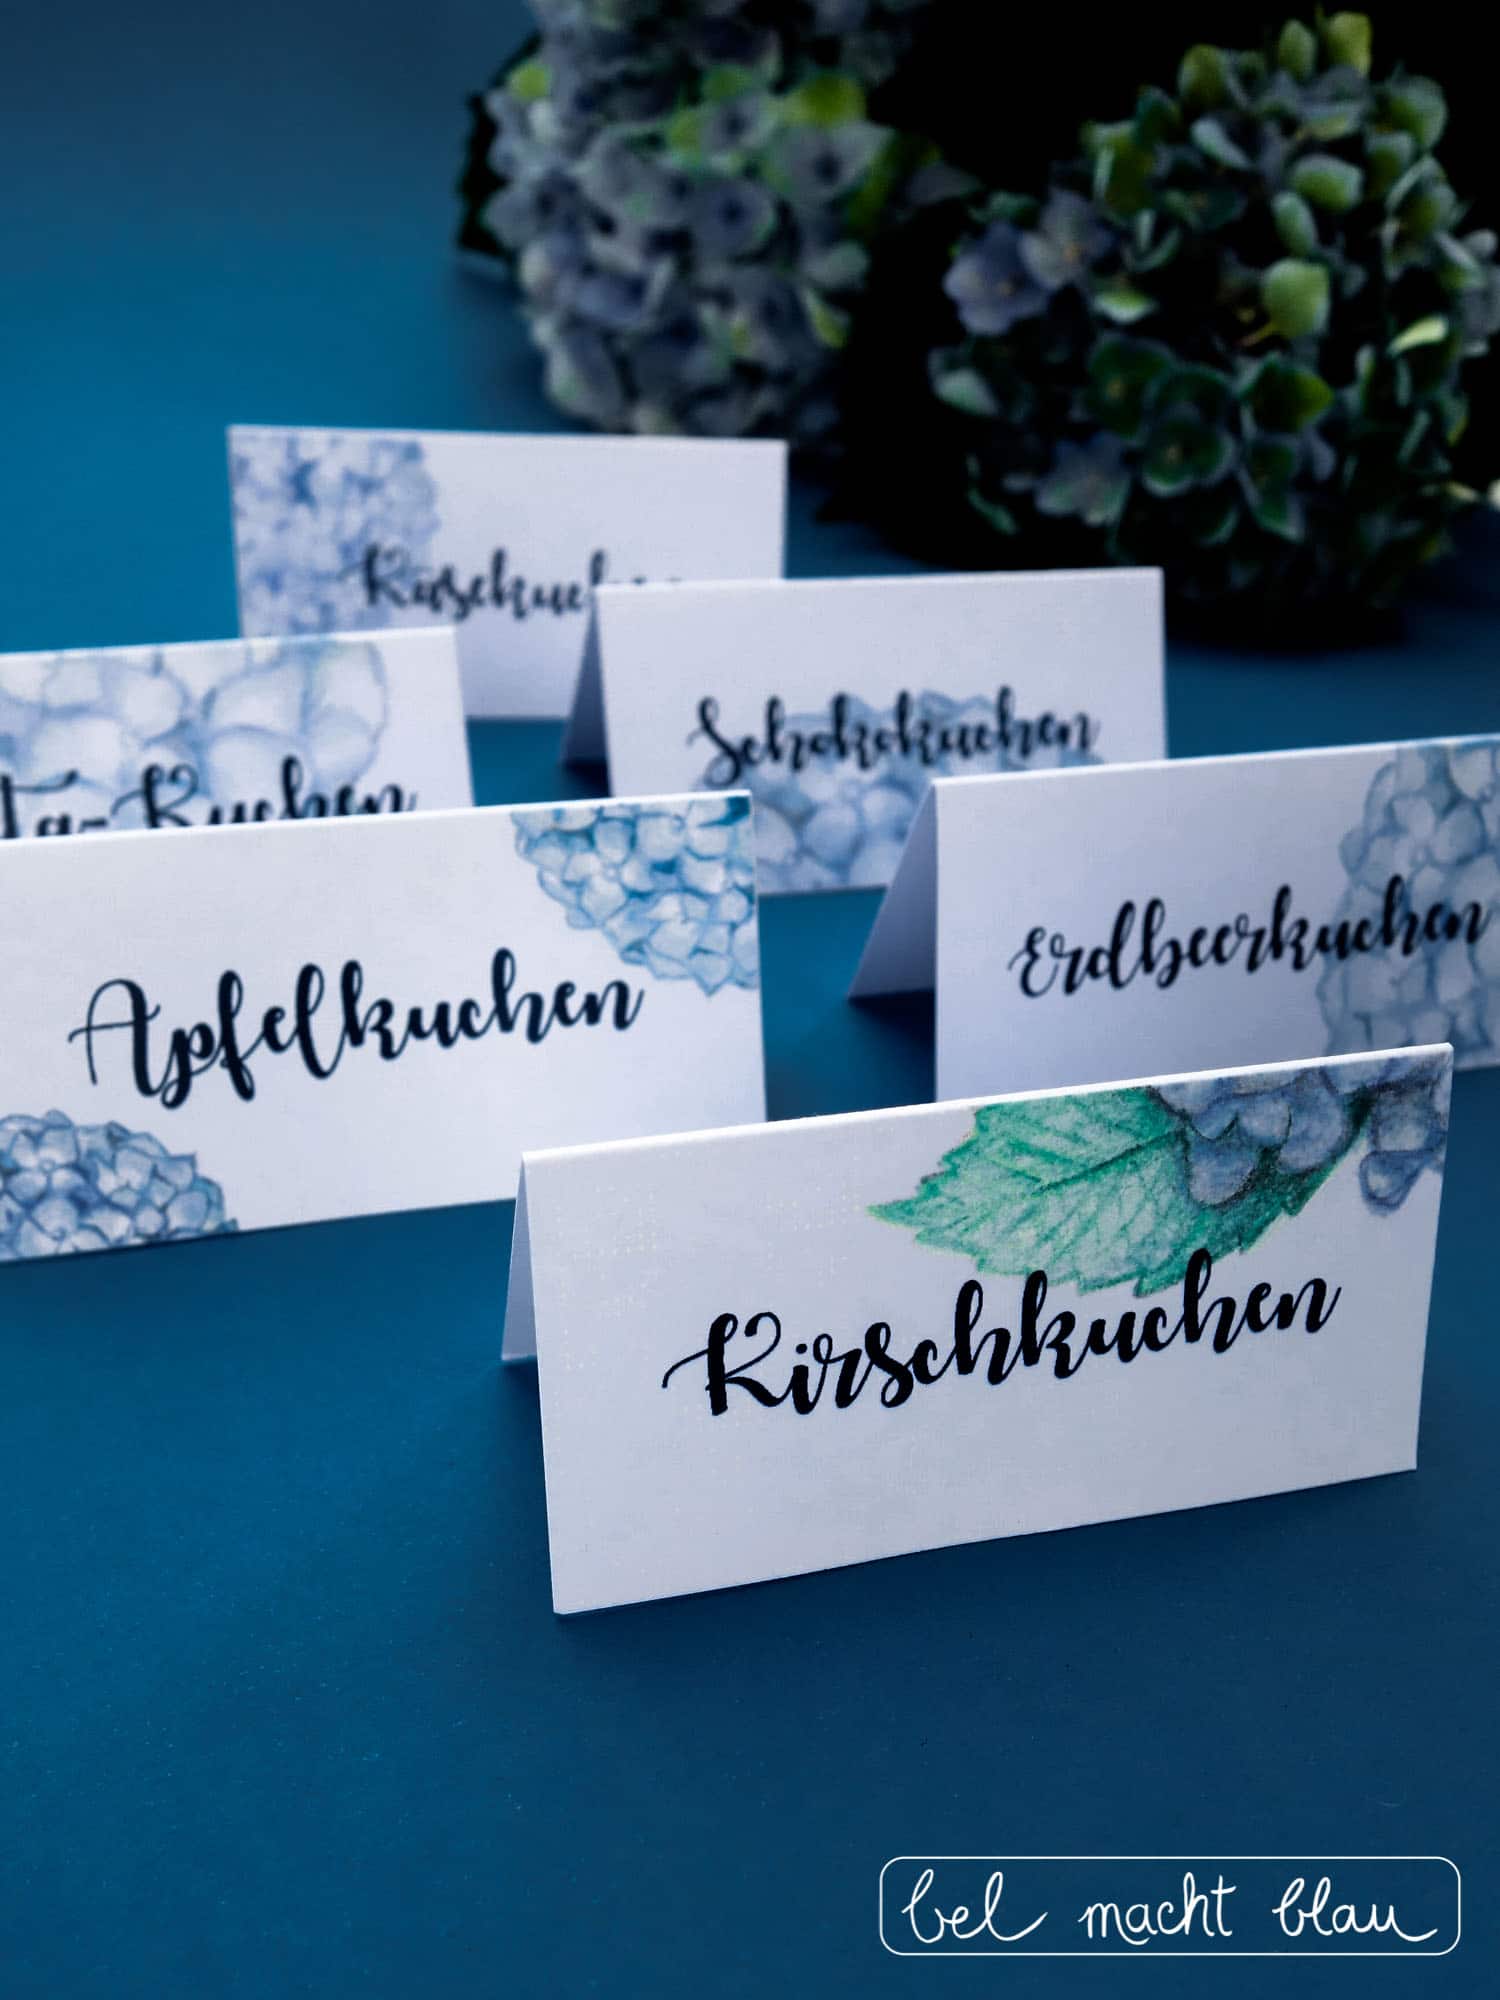 tischkarten hortensien beschriften belmachtblau hochzeitseinladungen hochzeitspapeterie handmadekultur hochzeitskarten tischkärtchen lehrerin